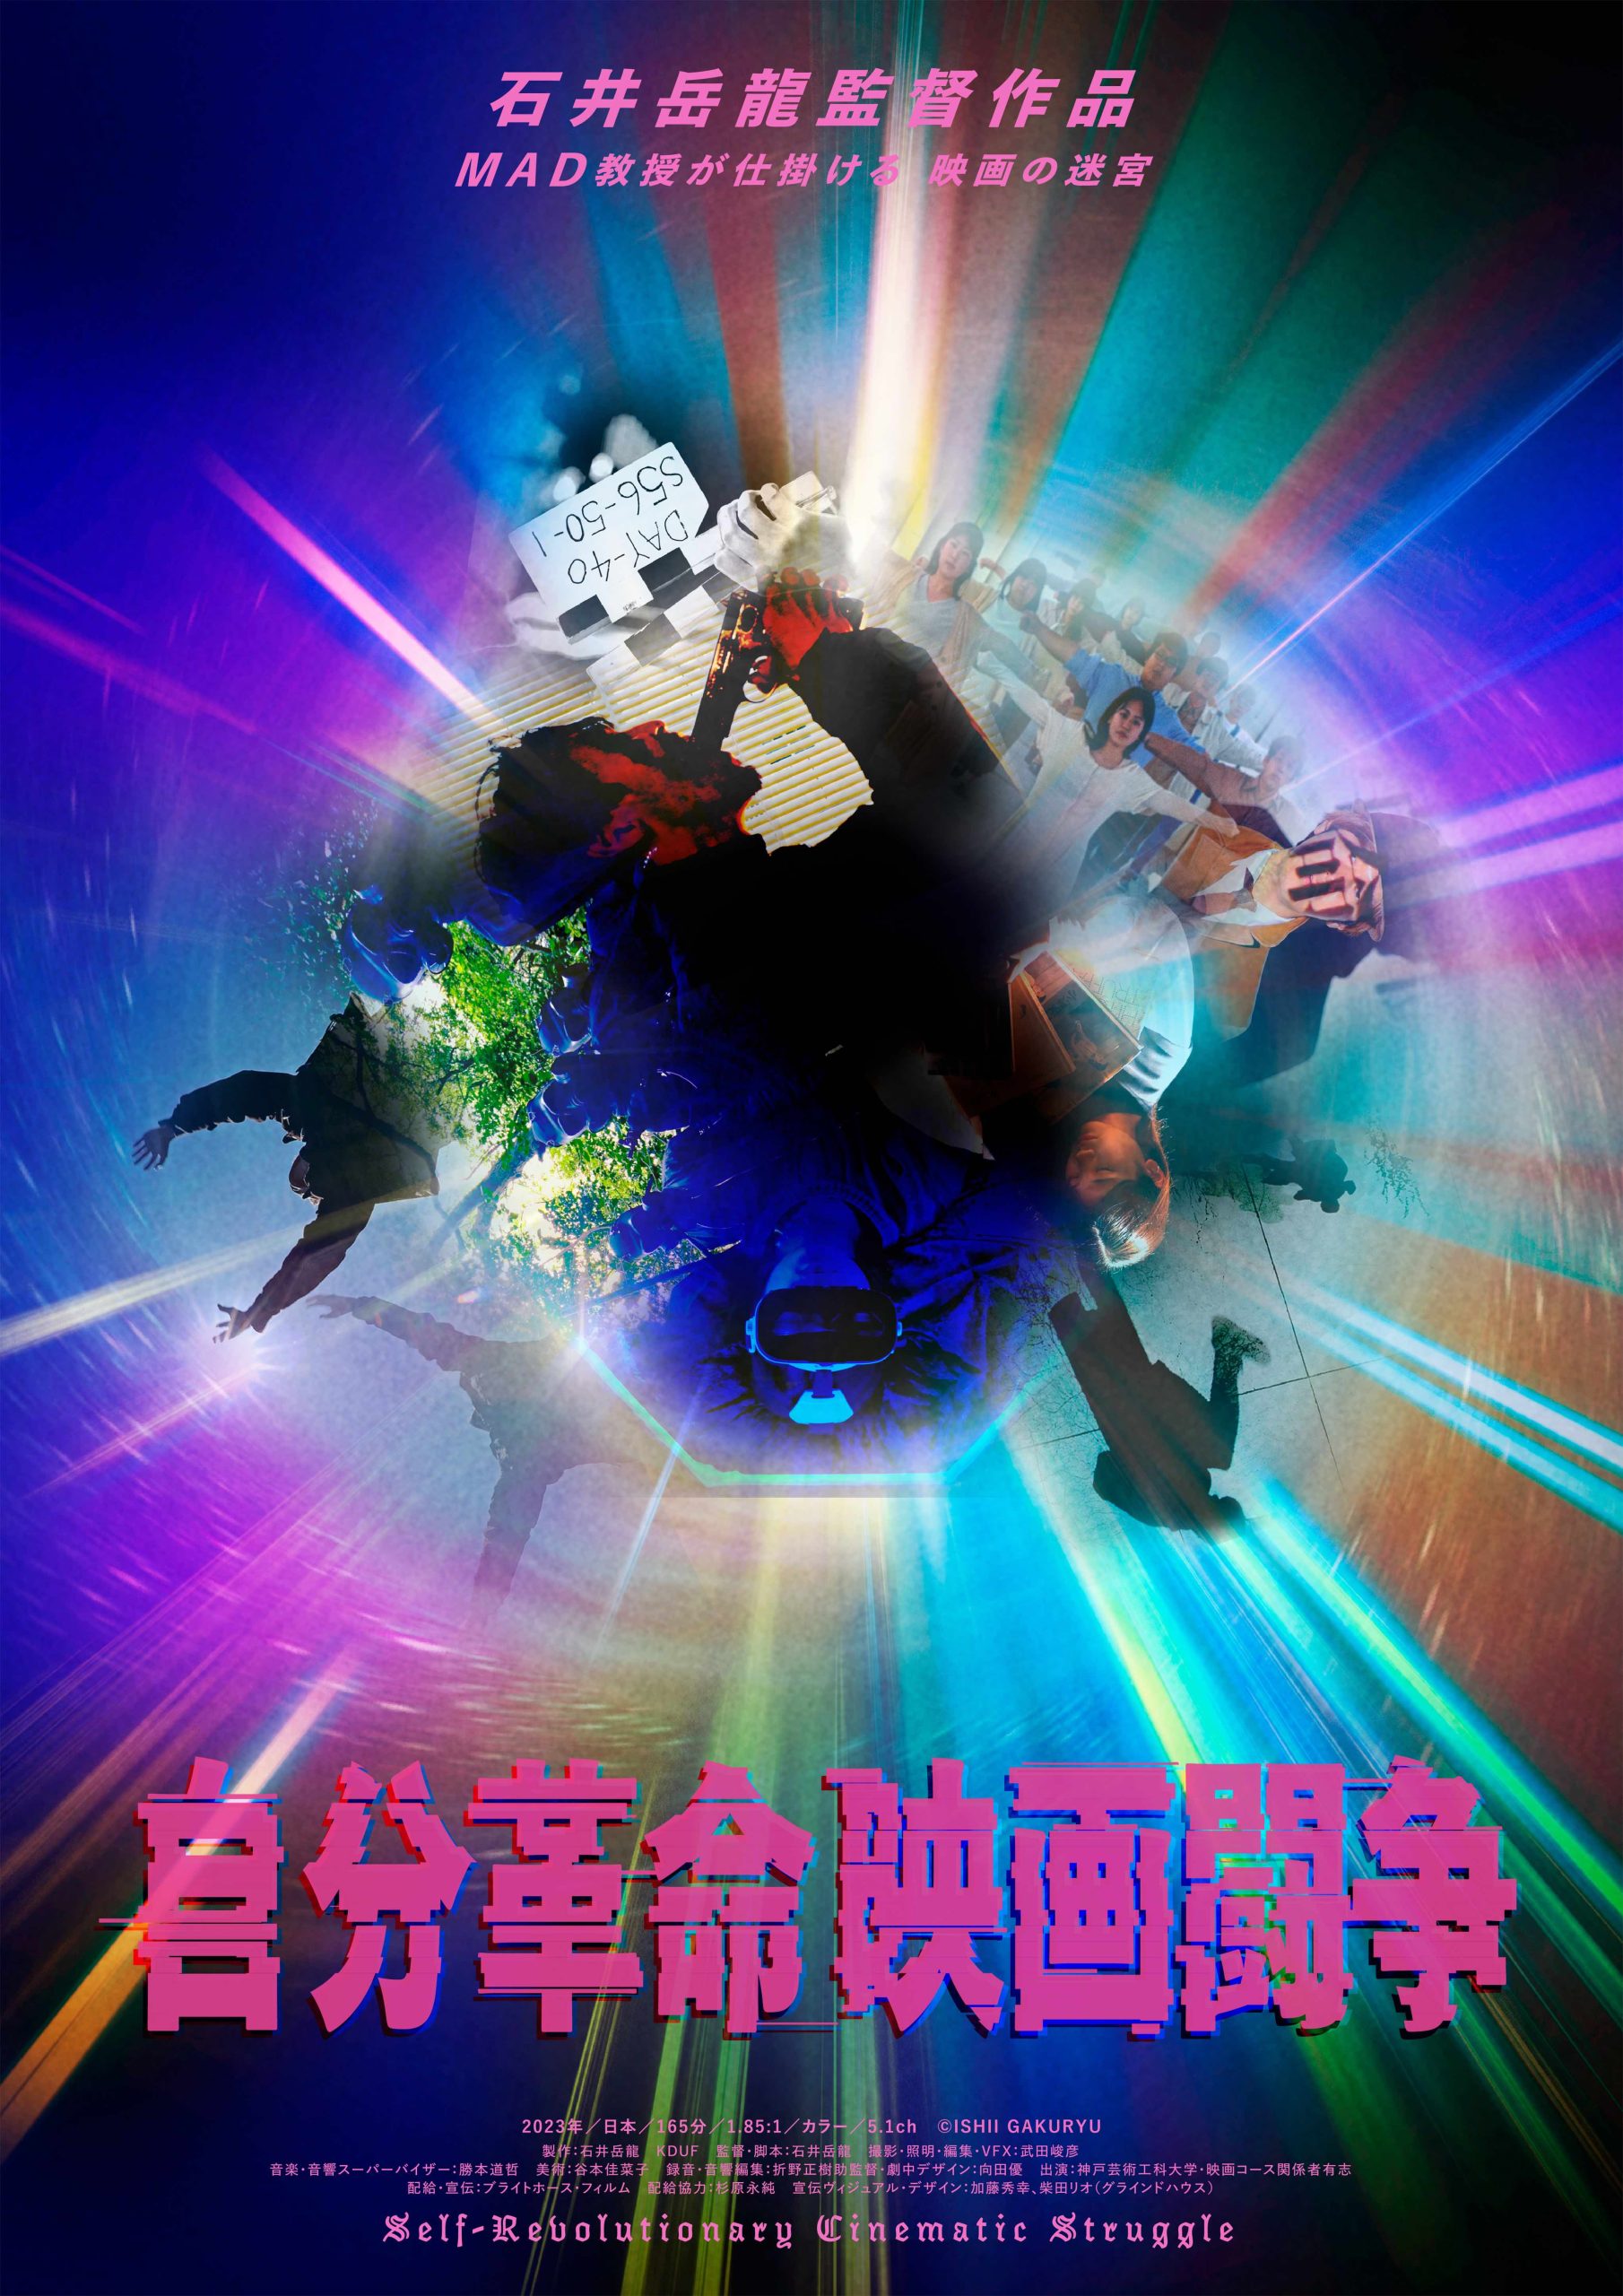 石井岳龍監督 最新作「自分革命映画闘争」3月18日から神戸にて先行公開